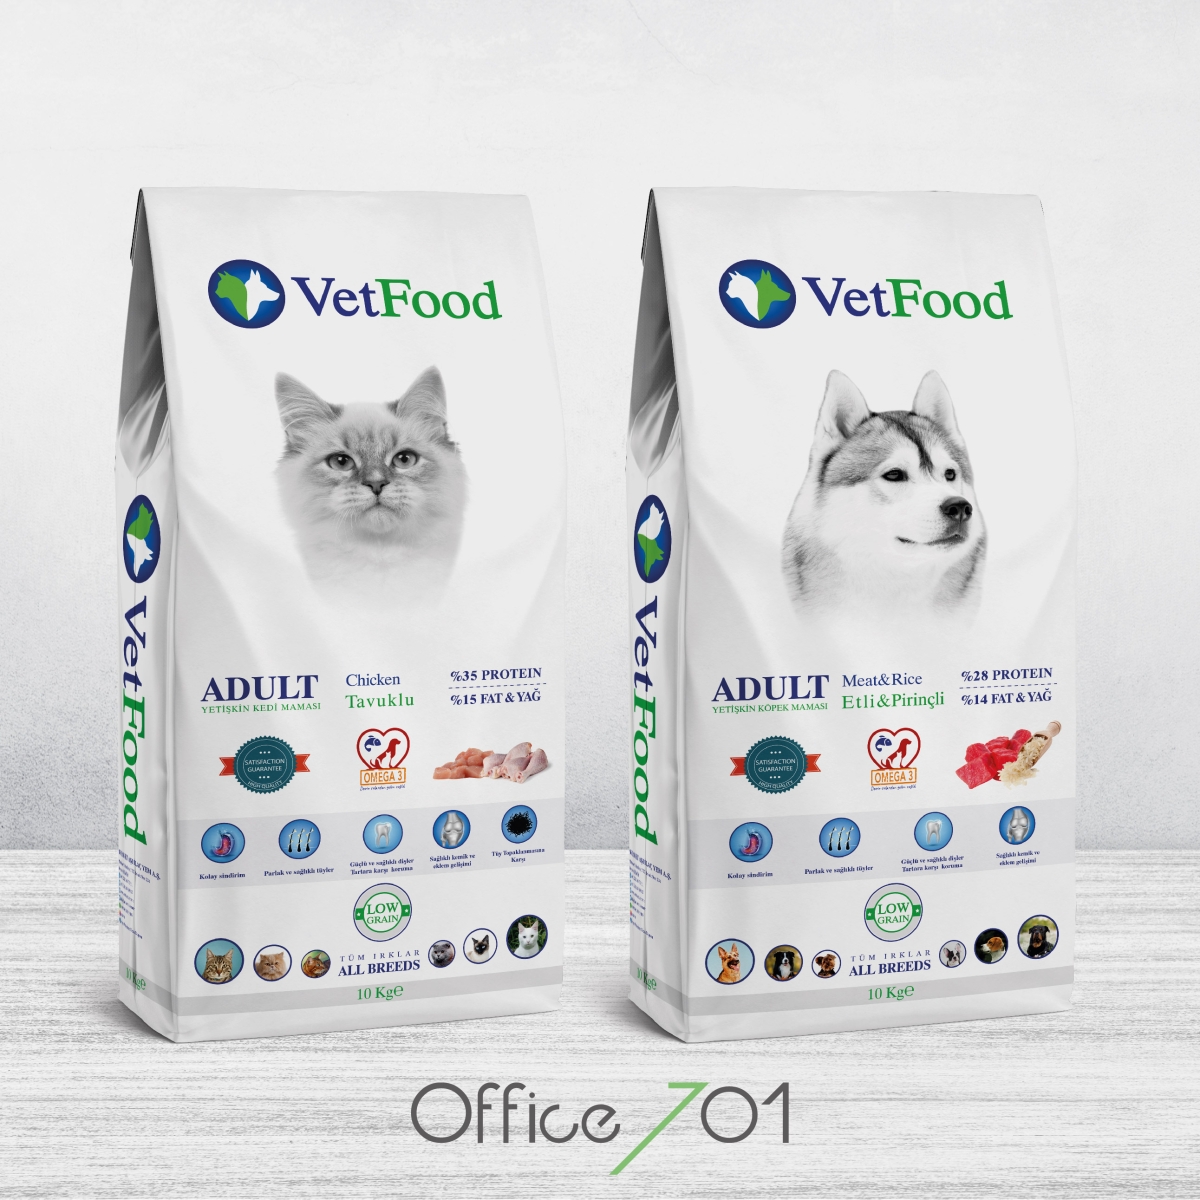 Office701 | VetFood Pet Food Packaging Design